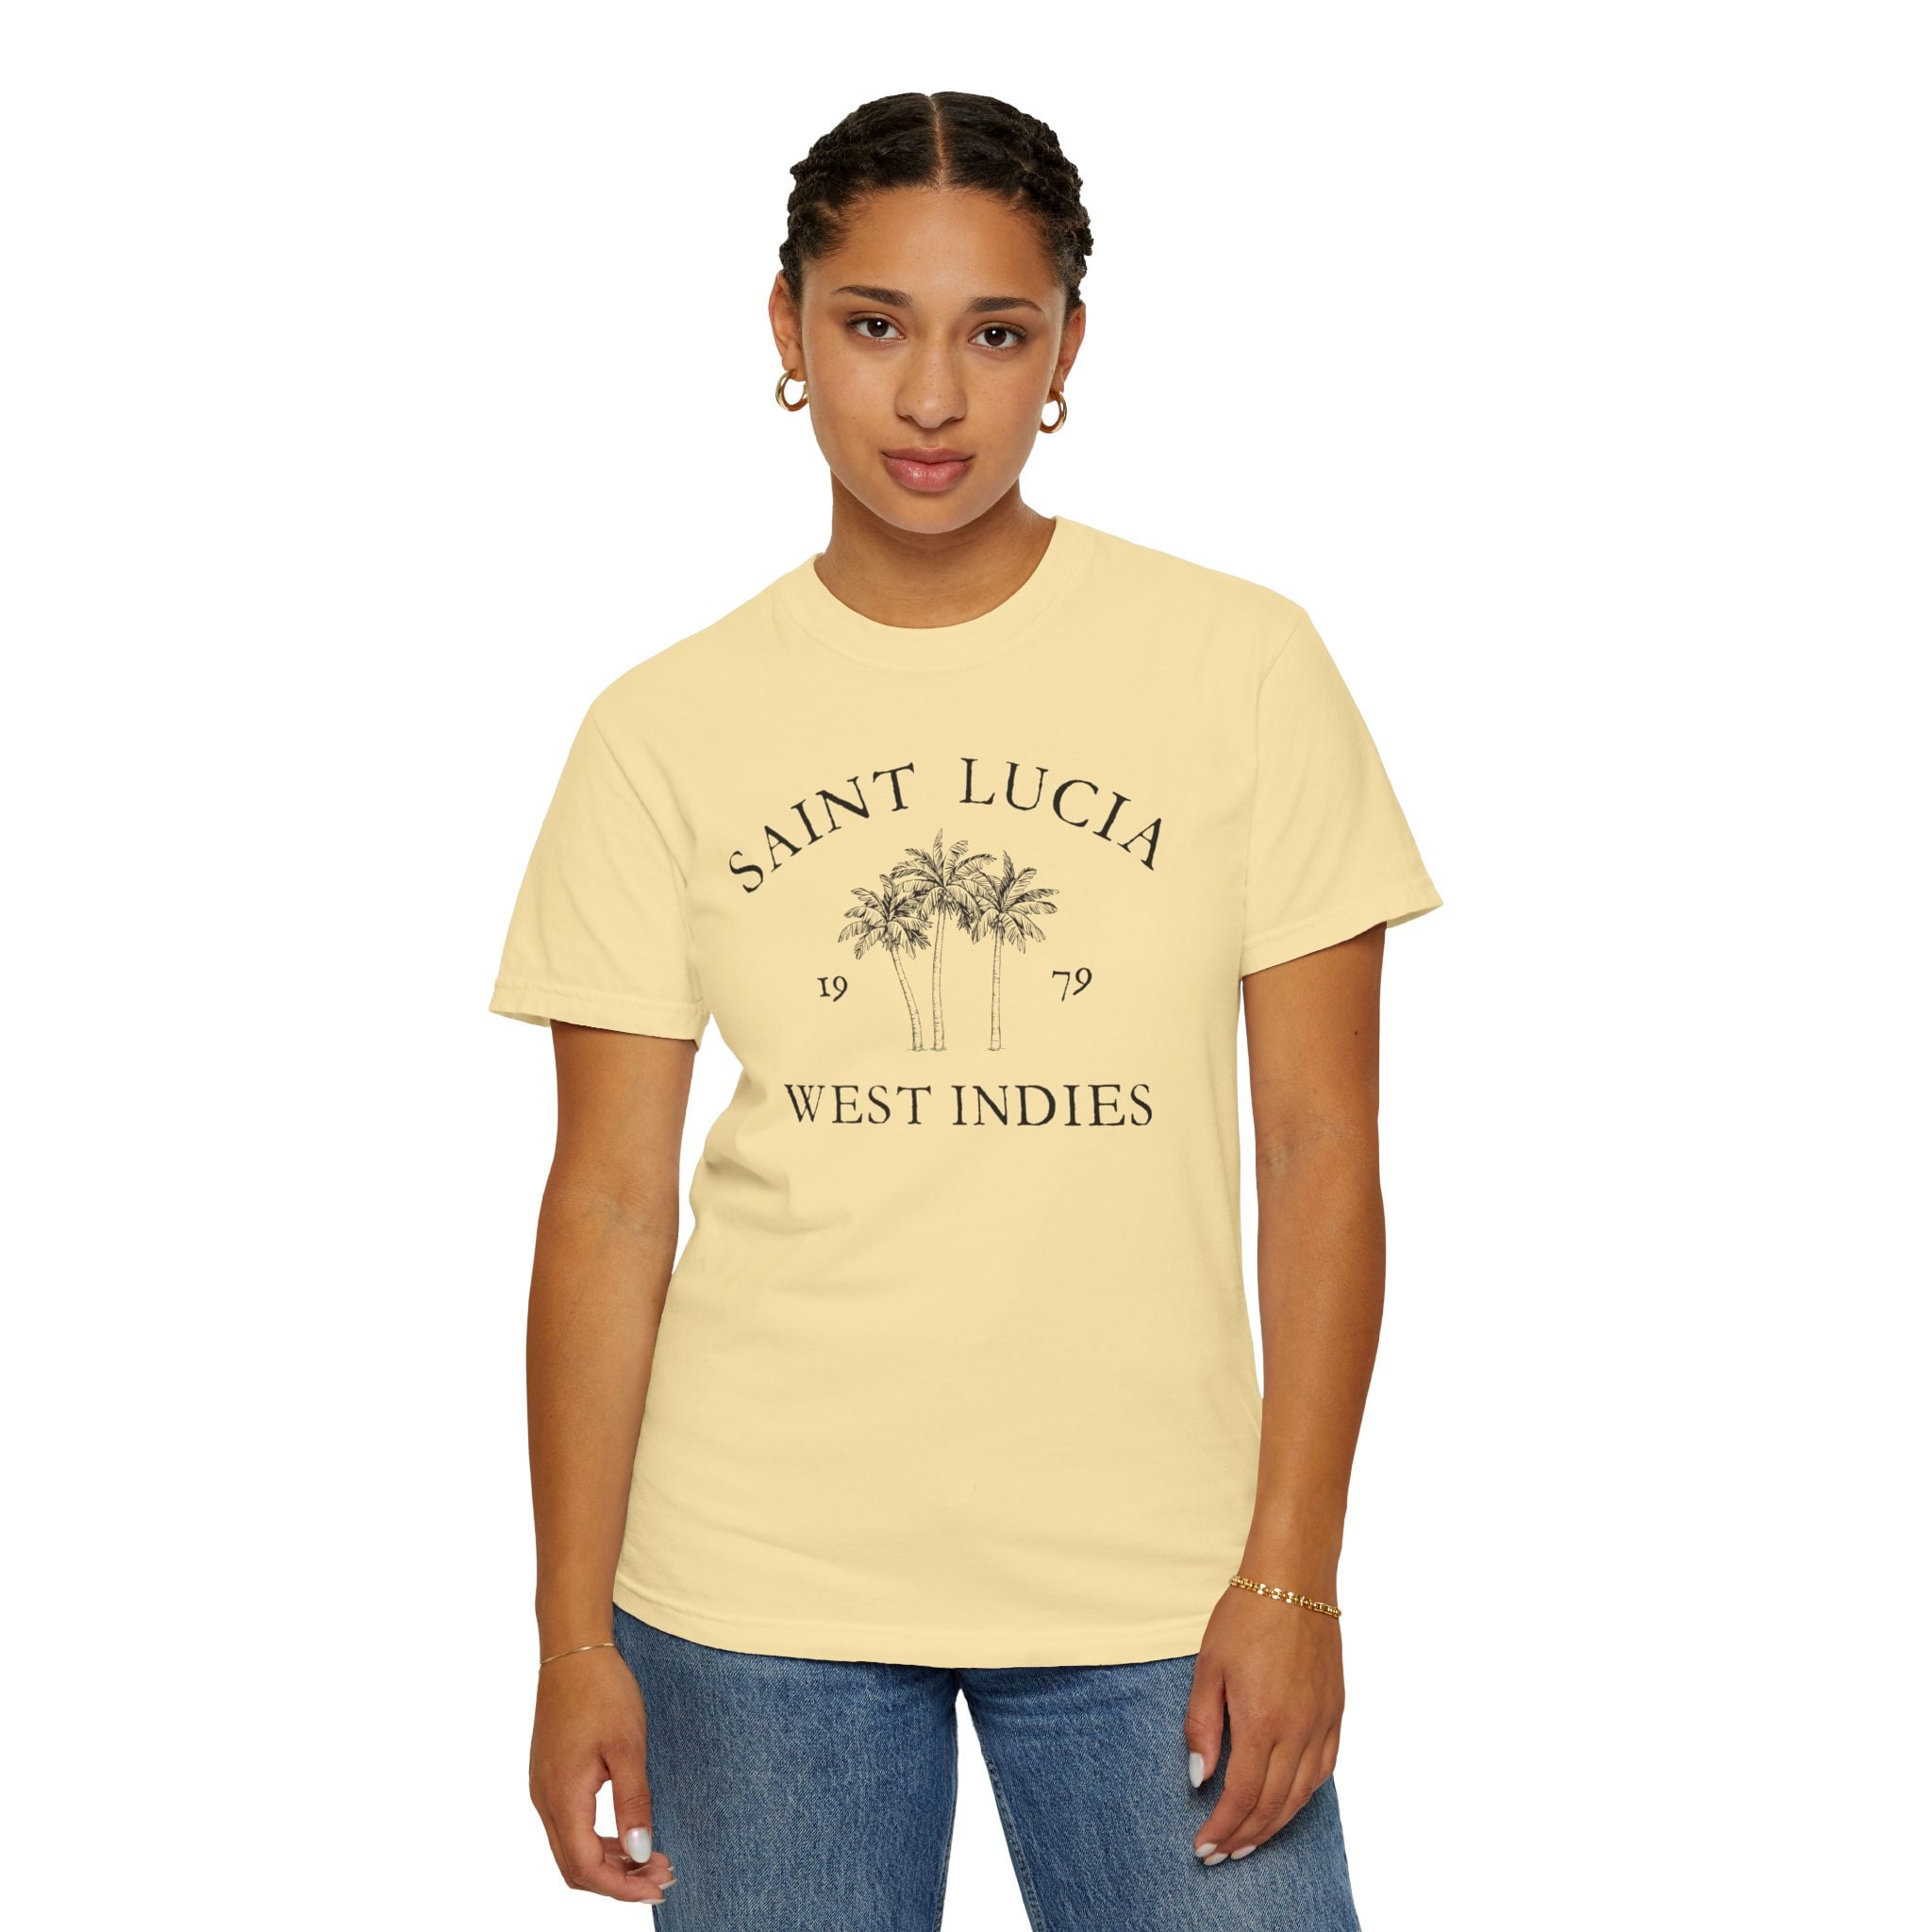 Saint Lucia Vintage-style T-shirt, Comfort Colors, Unisex Garment-Dyed  T-shirt, Souvenir shirt, St Lucia shirt, Soft & Comfy Crewneck Shirt